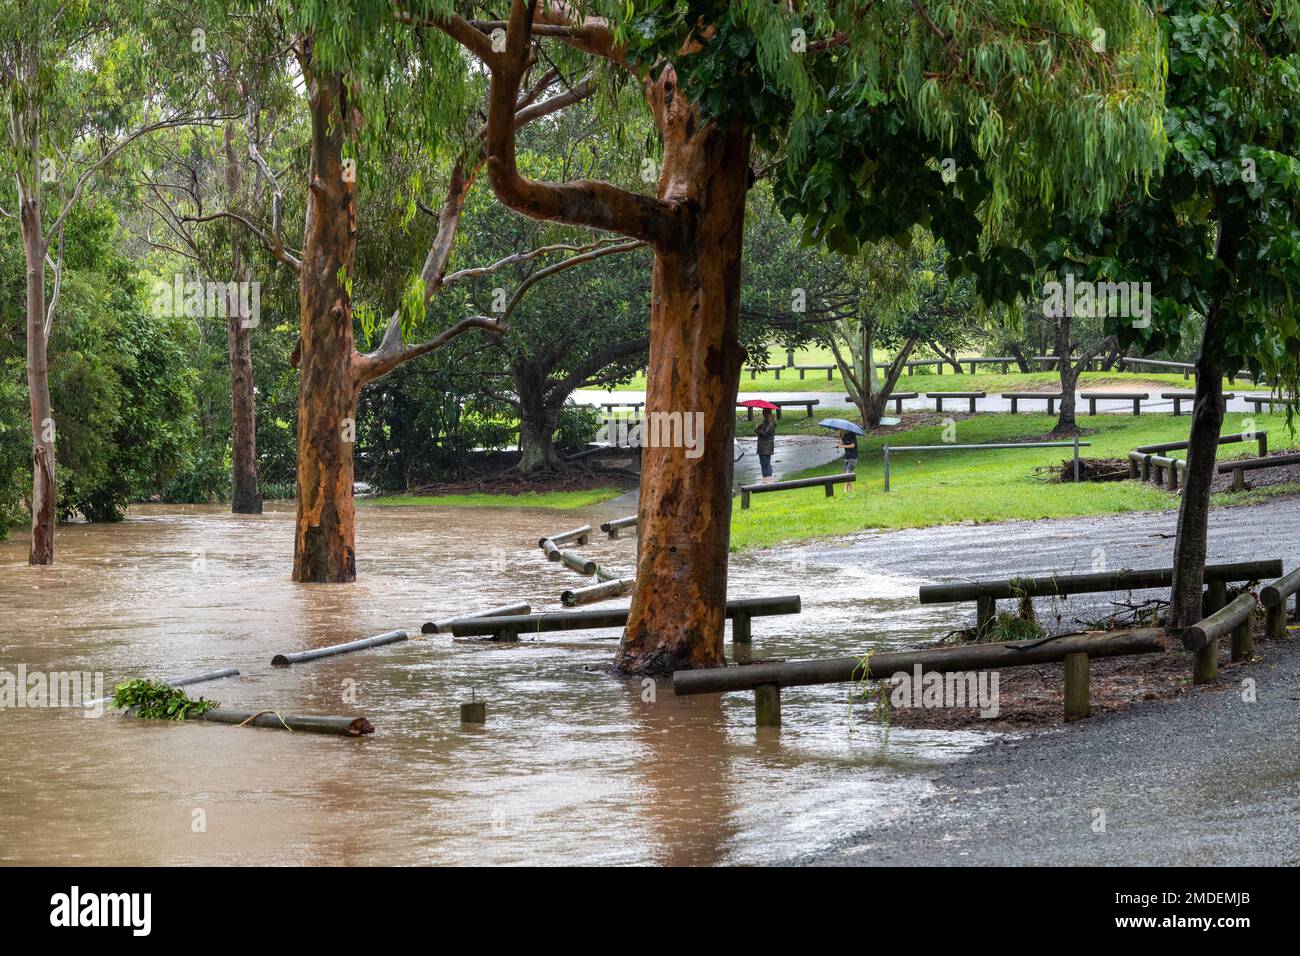 Personnes inspectant les eaux de crue au parc Teralba à Mitchelton pendant l'inondation extrême de février 2022 en Australie Banque D'Images